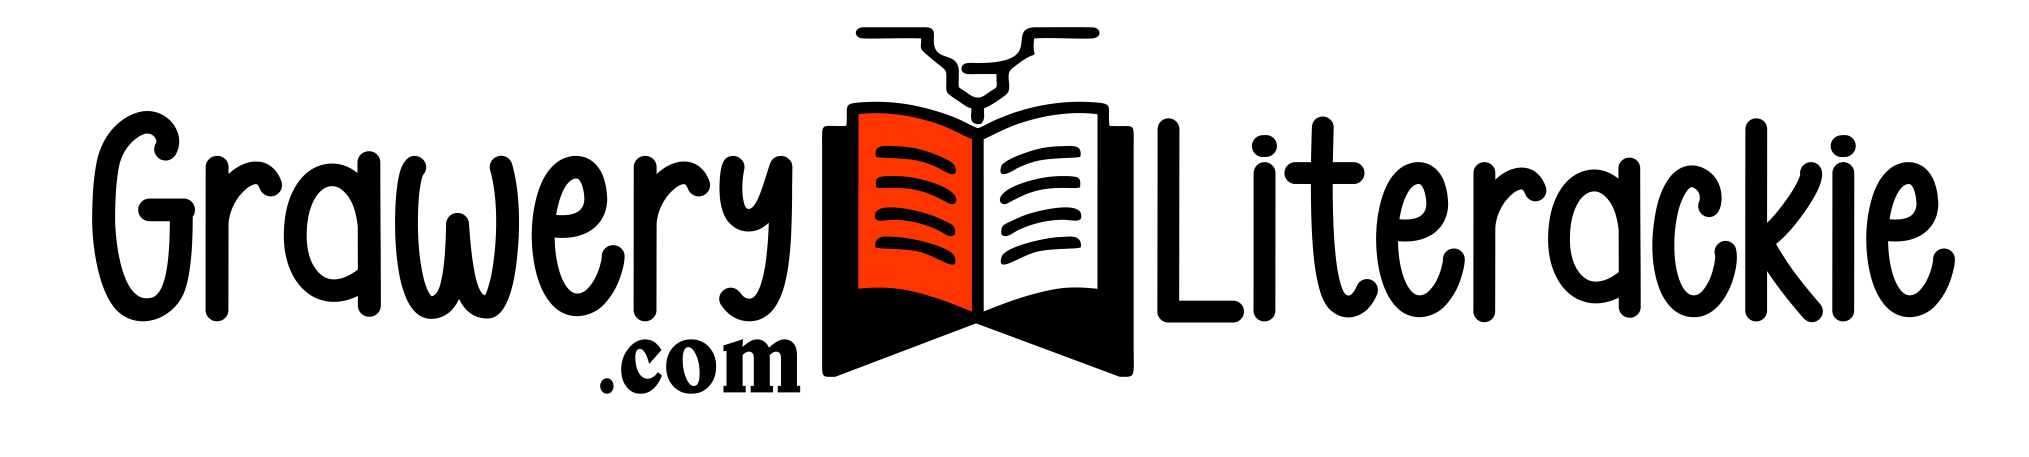 grawery literackie logo 